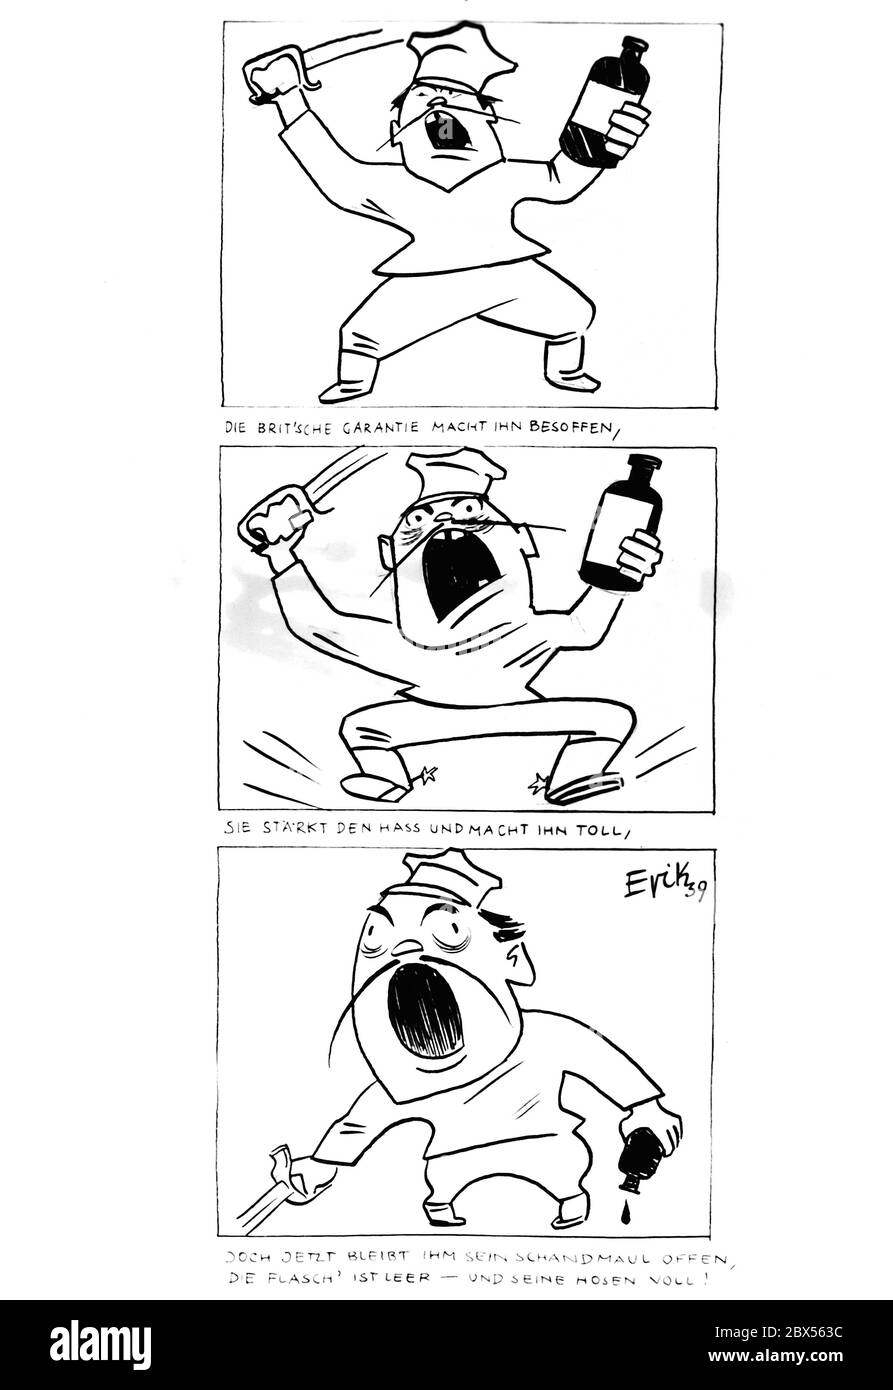 Eine Karikatur von Erik zeigt einen polnischen Soldaten in einer Folge von drei Zeichnungen: "Die britische Garantie macht ihn betrunken, sie stärkt den Hass und macht ihn groß, aber jetzt bleibt sein böser Mund offen, die Flasche ist leer - und seine Hose voll! Stockfoto